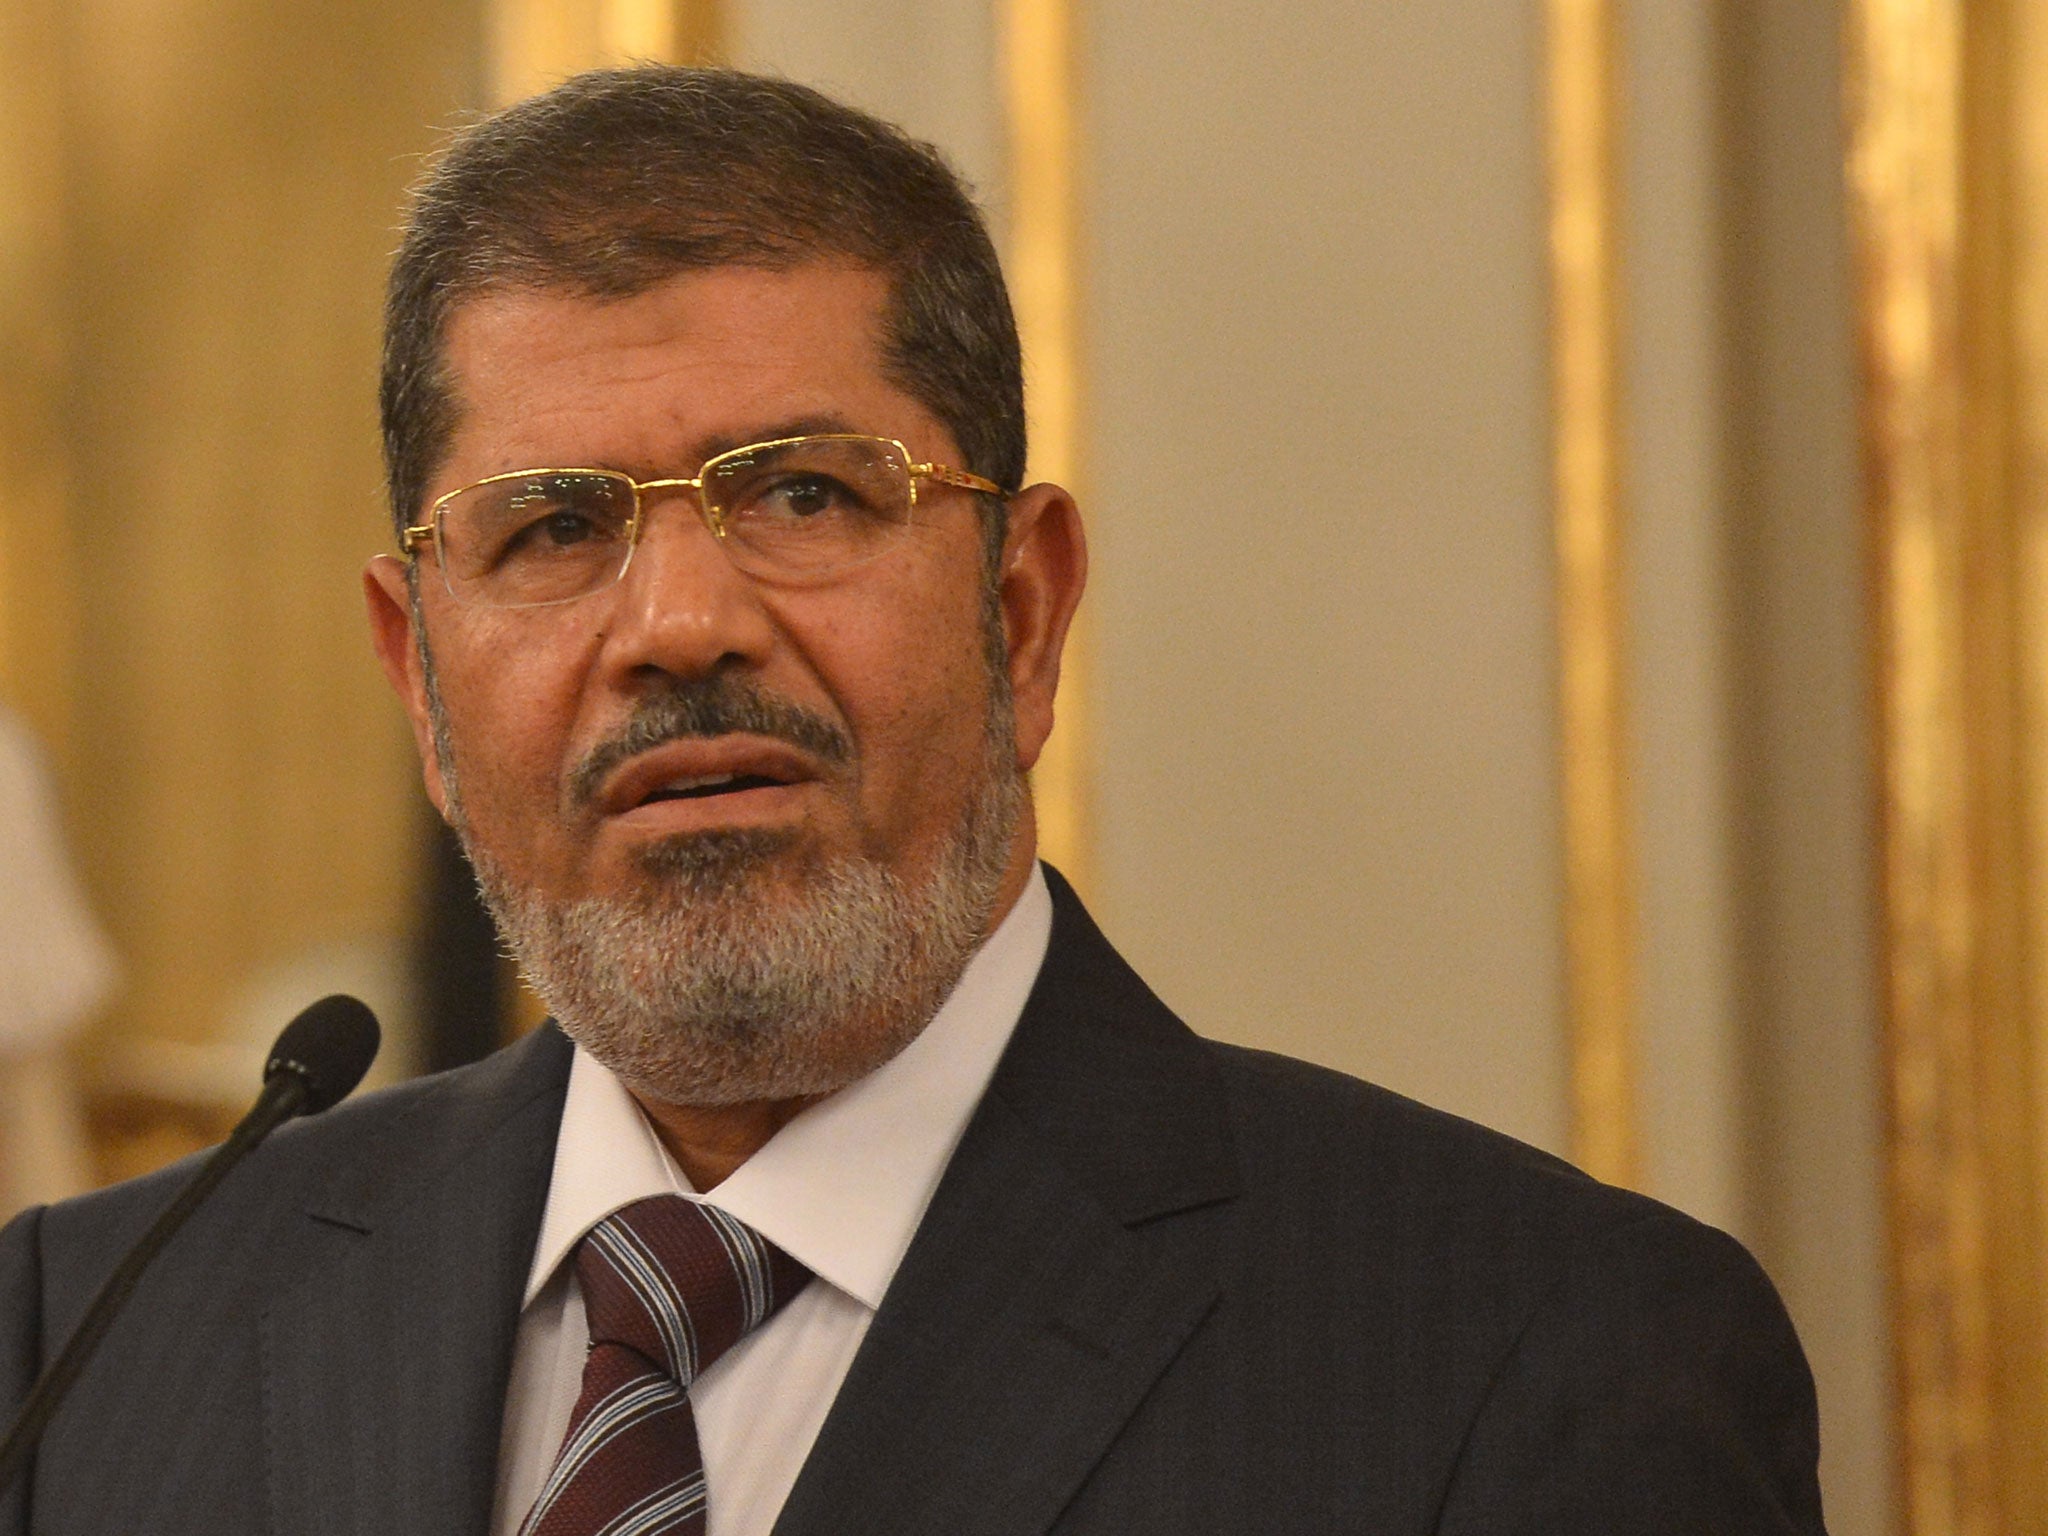 Ousted Egyptian leader Mohamed Morsi